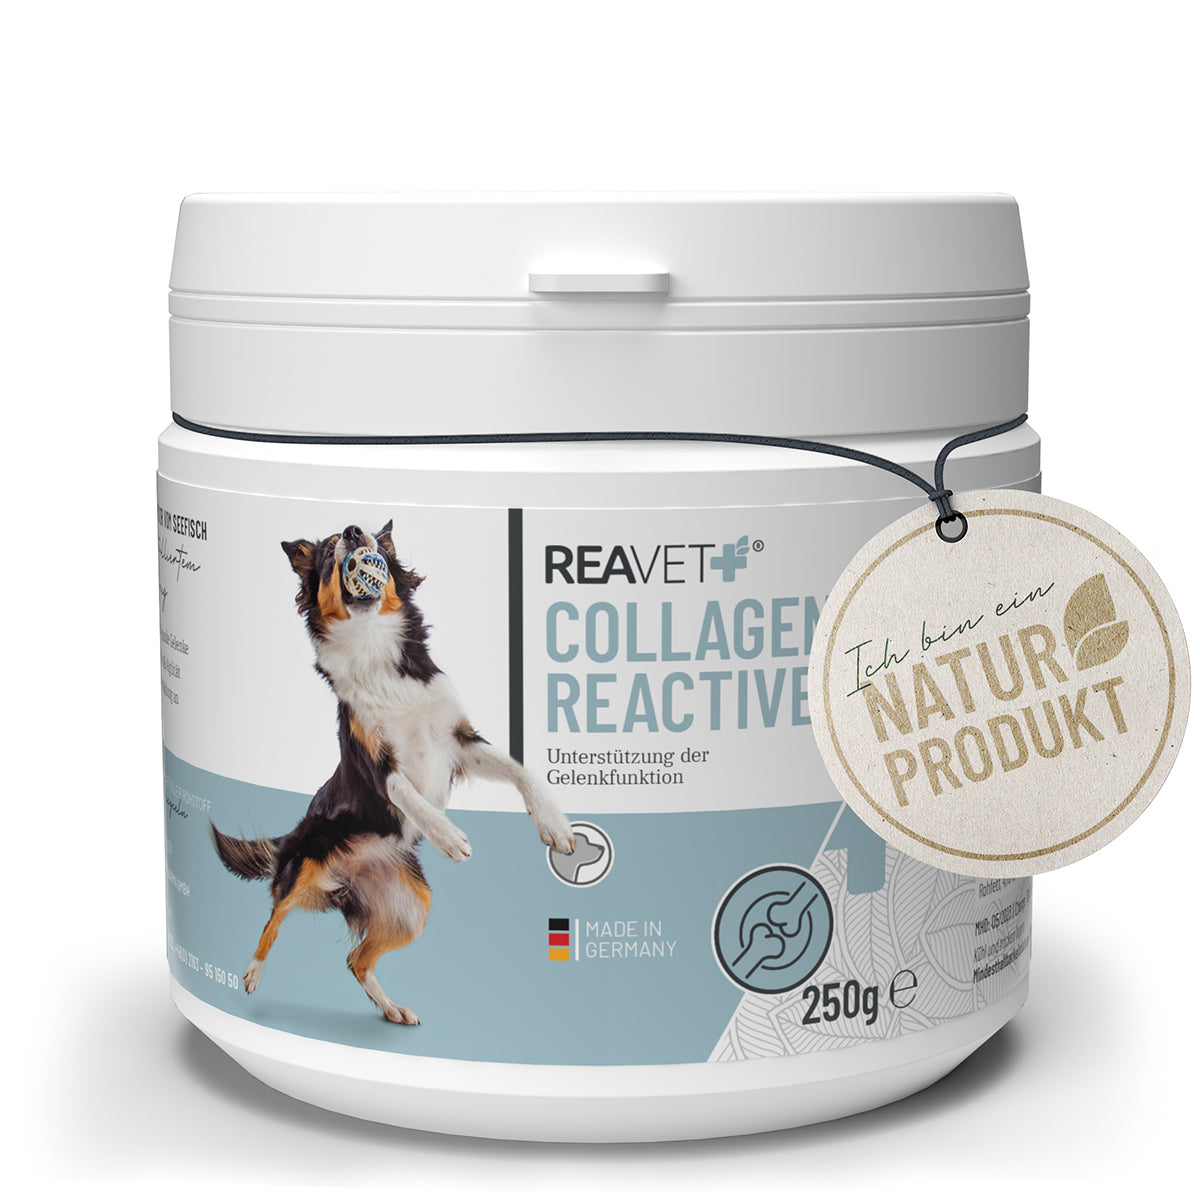 ReaVet-Collagen-Reactive-250g